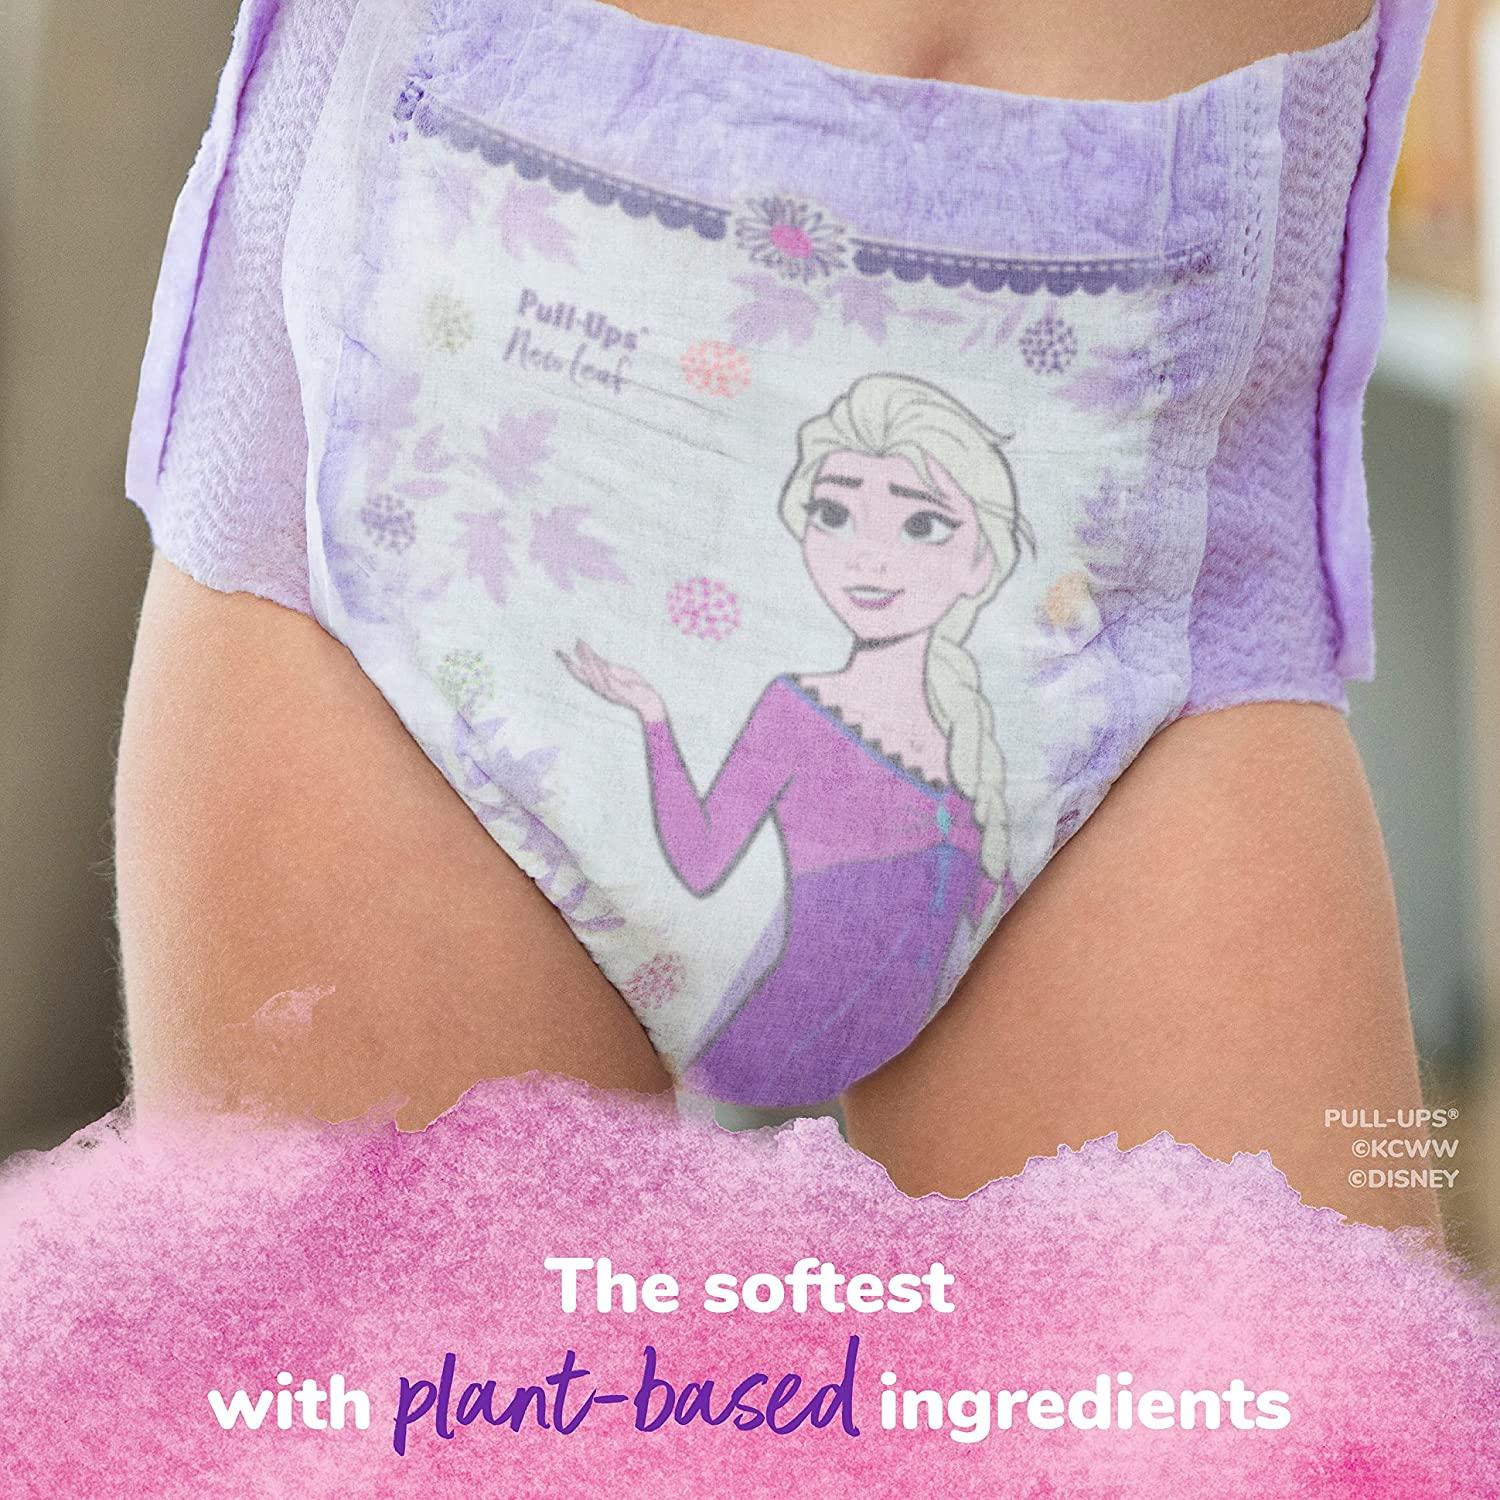 Disney Frozen Girl's Underwear Panties Anna and Elsa, 3 Pack